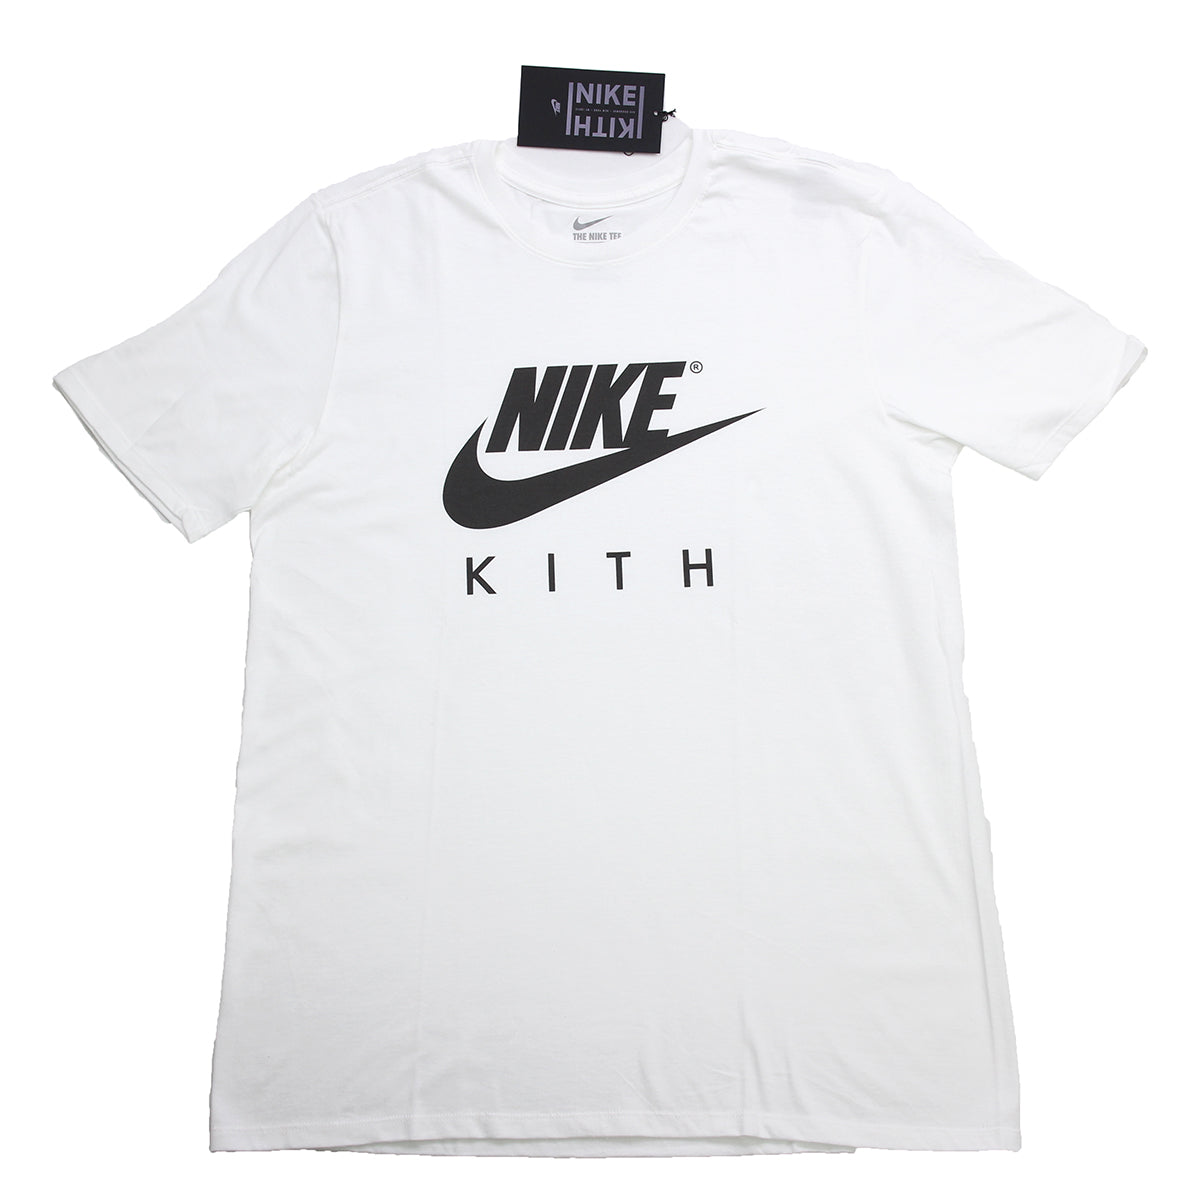 KITH Box Logo T Shirt   HUNDO P Buy&Sell